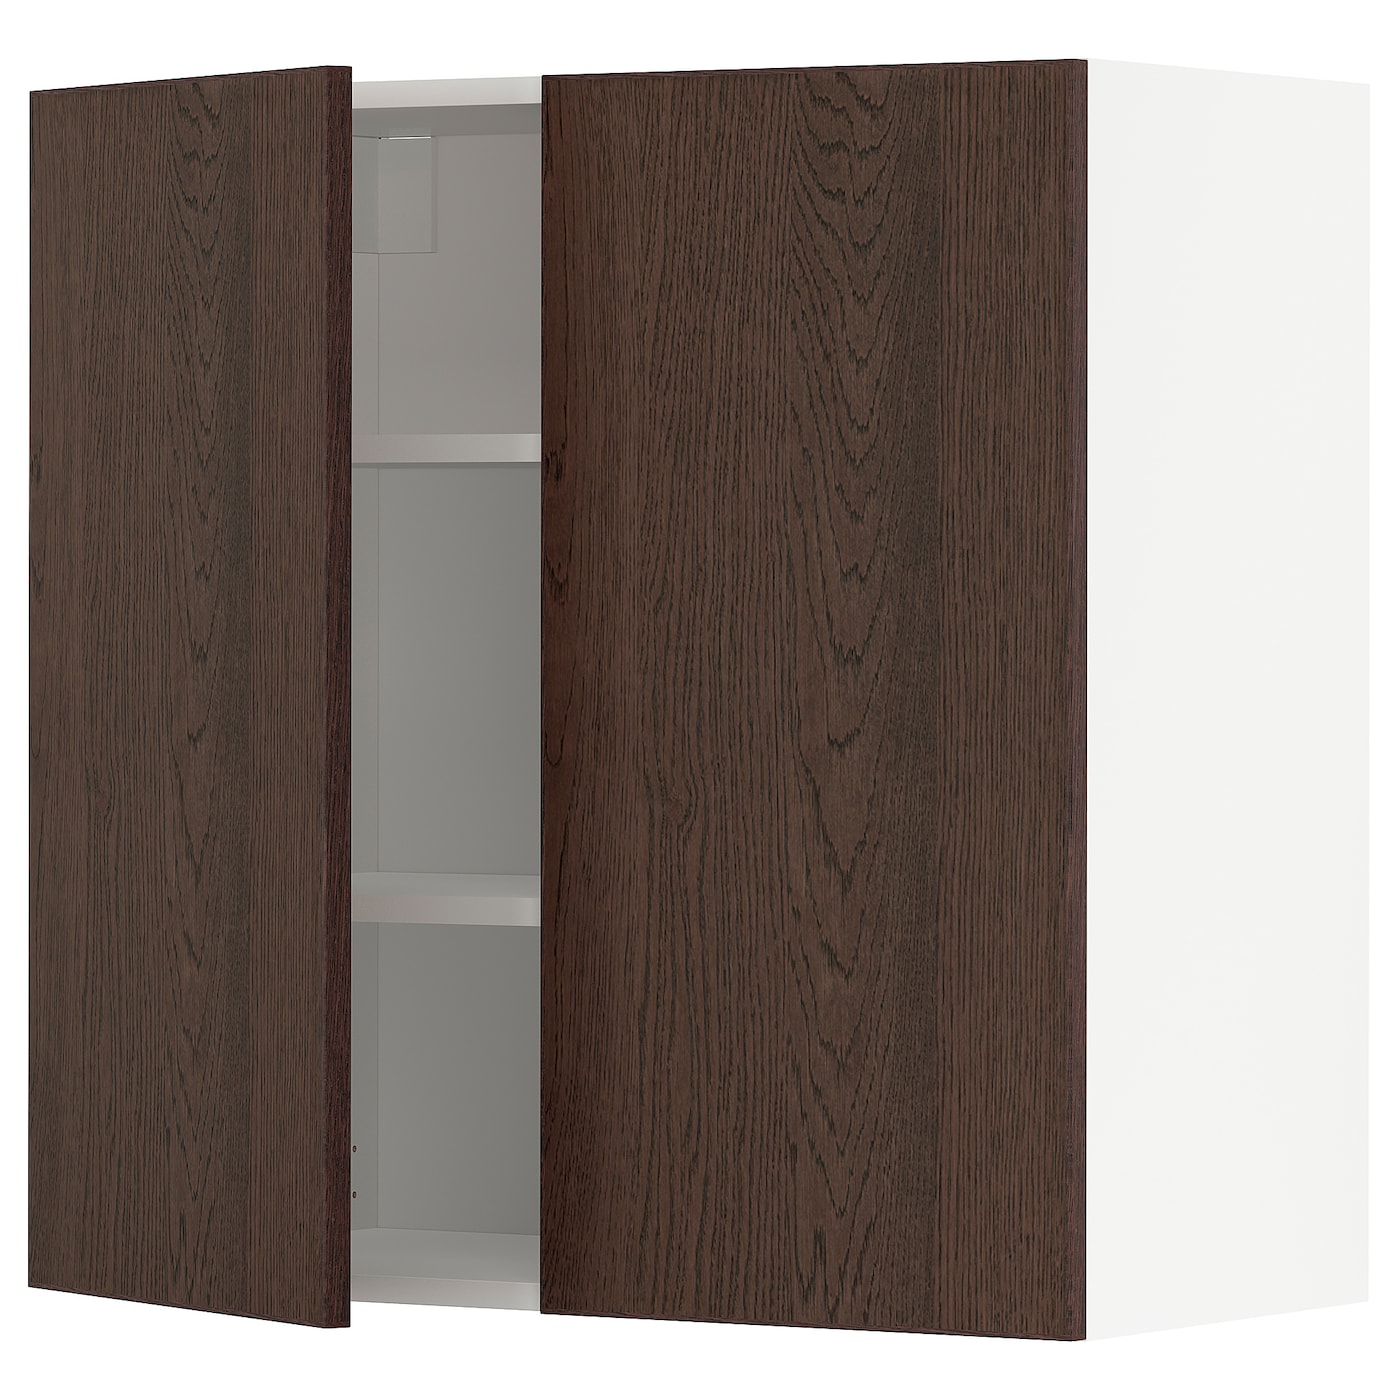 Навесной шкаф с полкой - METOD IKEA/ МЕТОД ИКЕА, 80х80 см, белый/коричневый